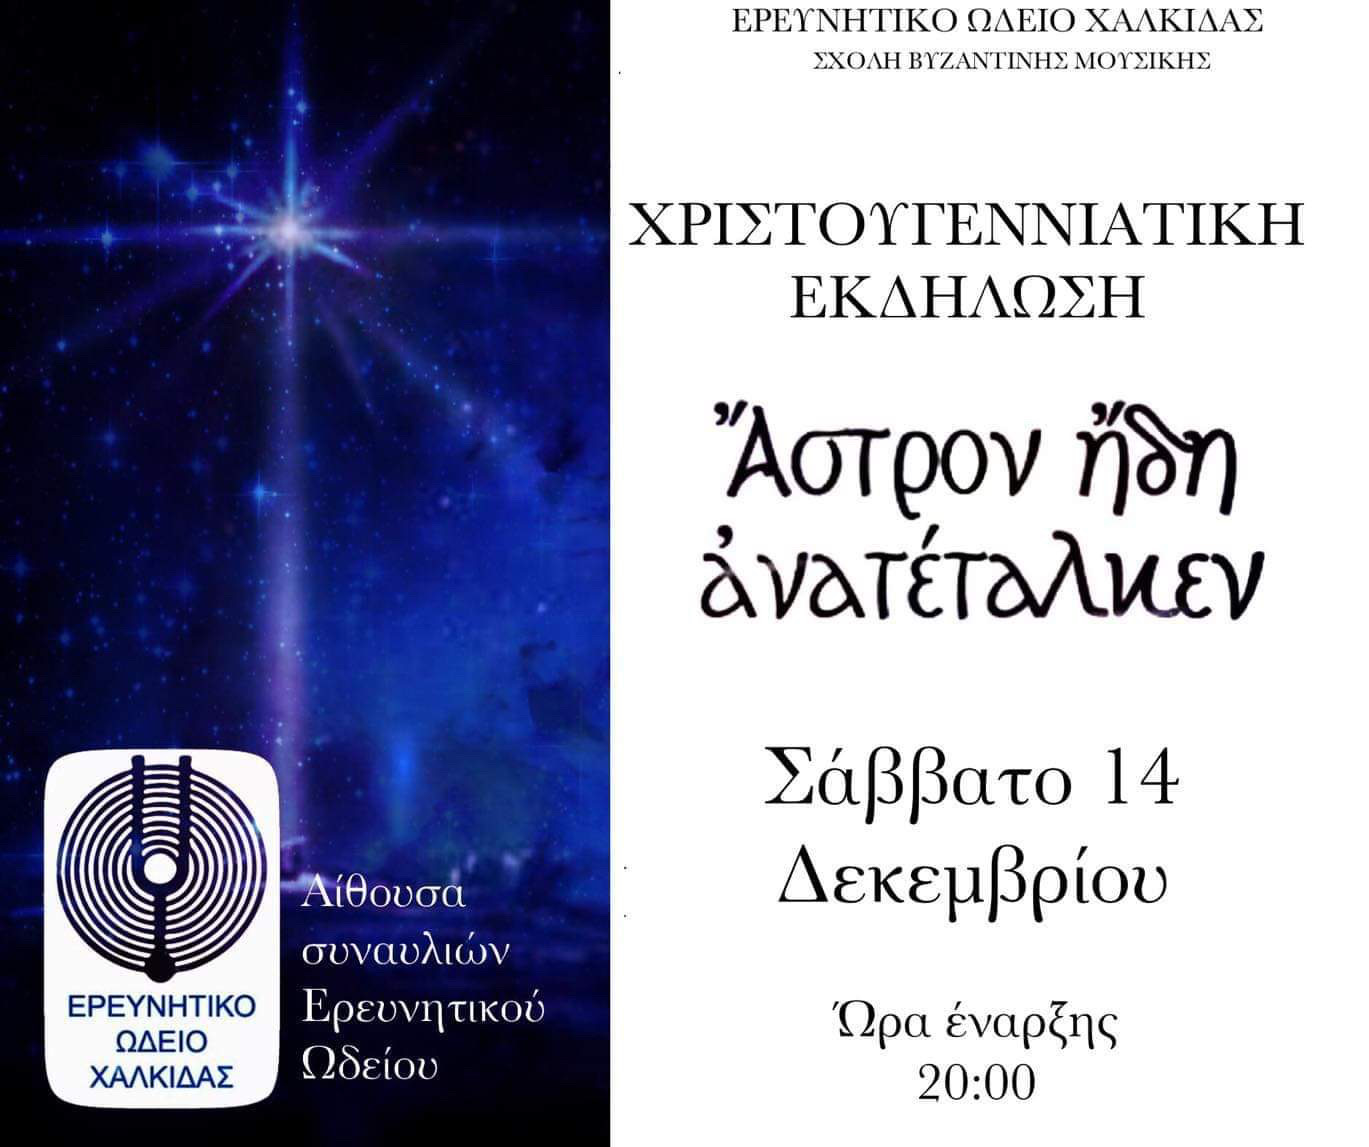 Χριστουγεννιάτικη εκδήλωση διοργανώνει η Σχολή Βυζαντινής Μουσικής του Ερευνητικού Ωδείου Χαλκίδας